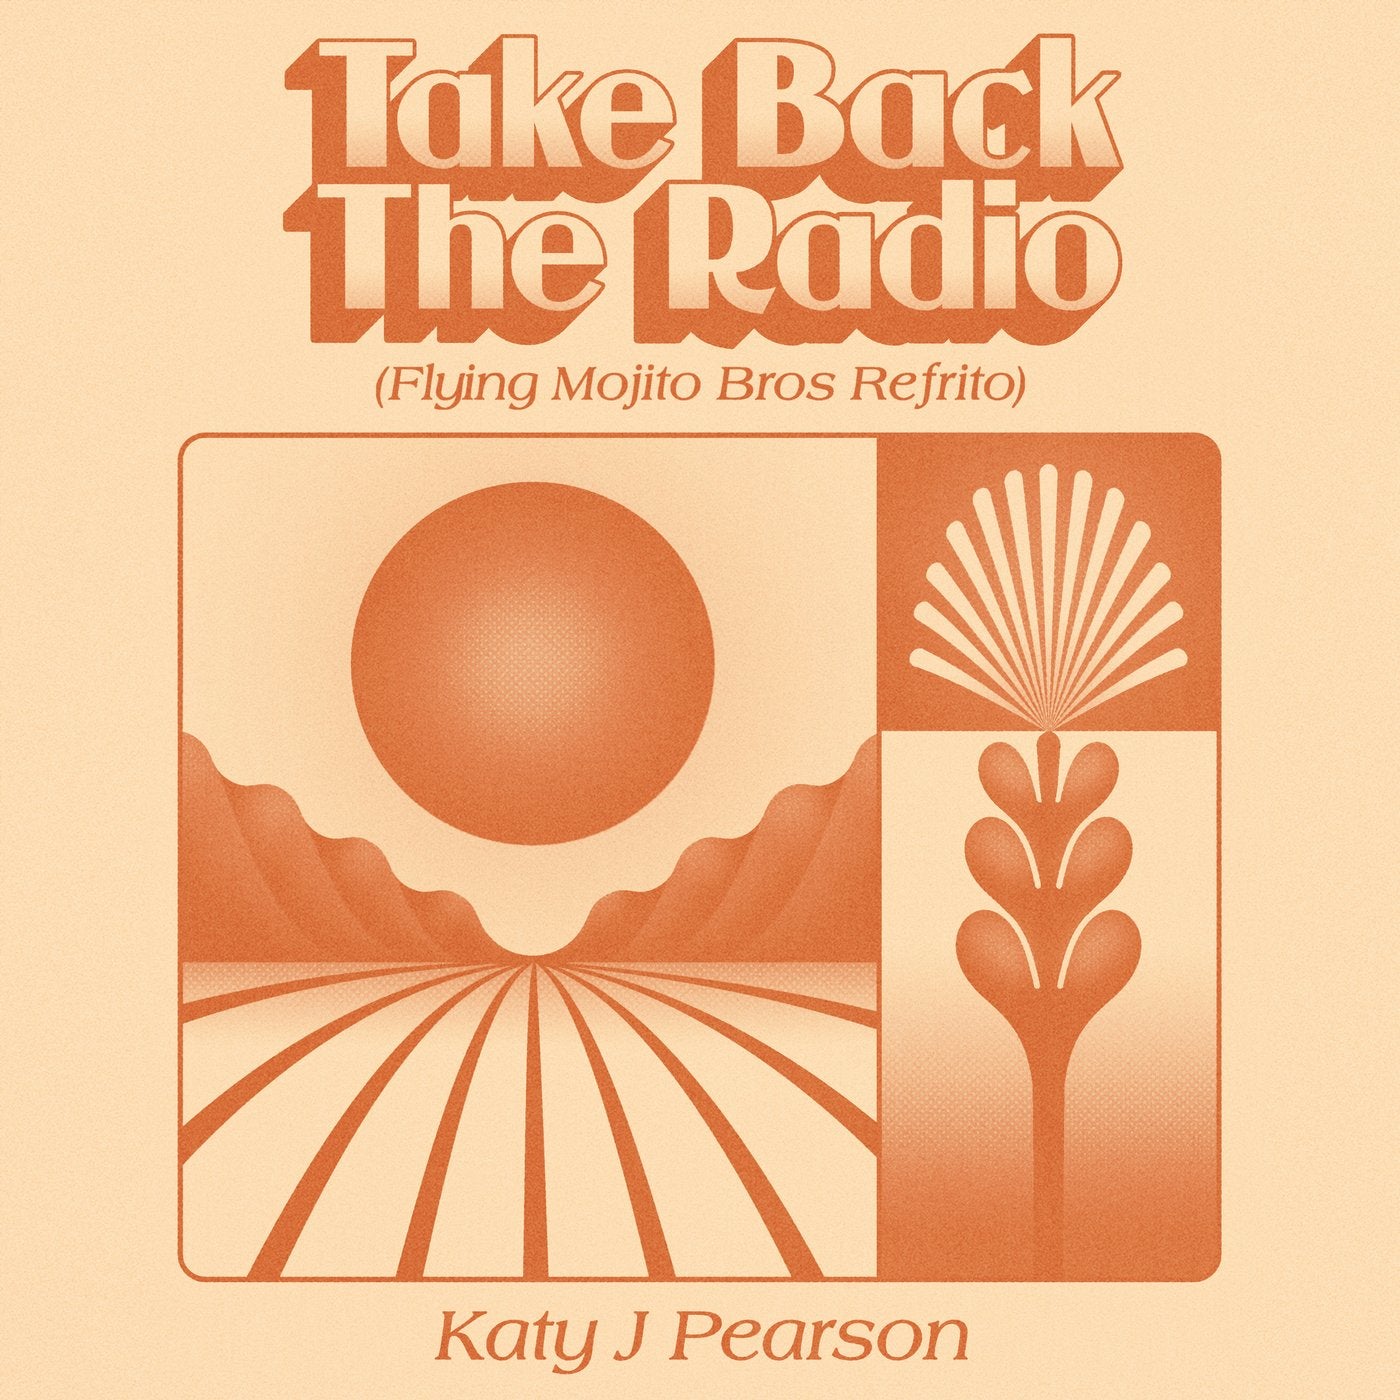 Take Back The Radio (Flying Mojito Bros Refrito)